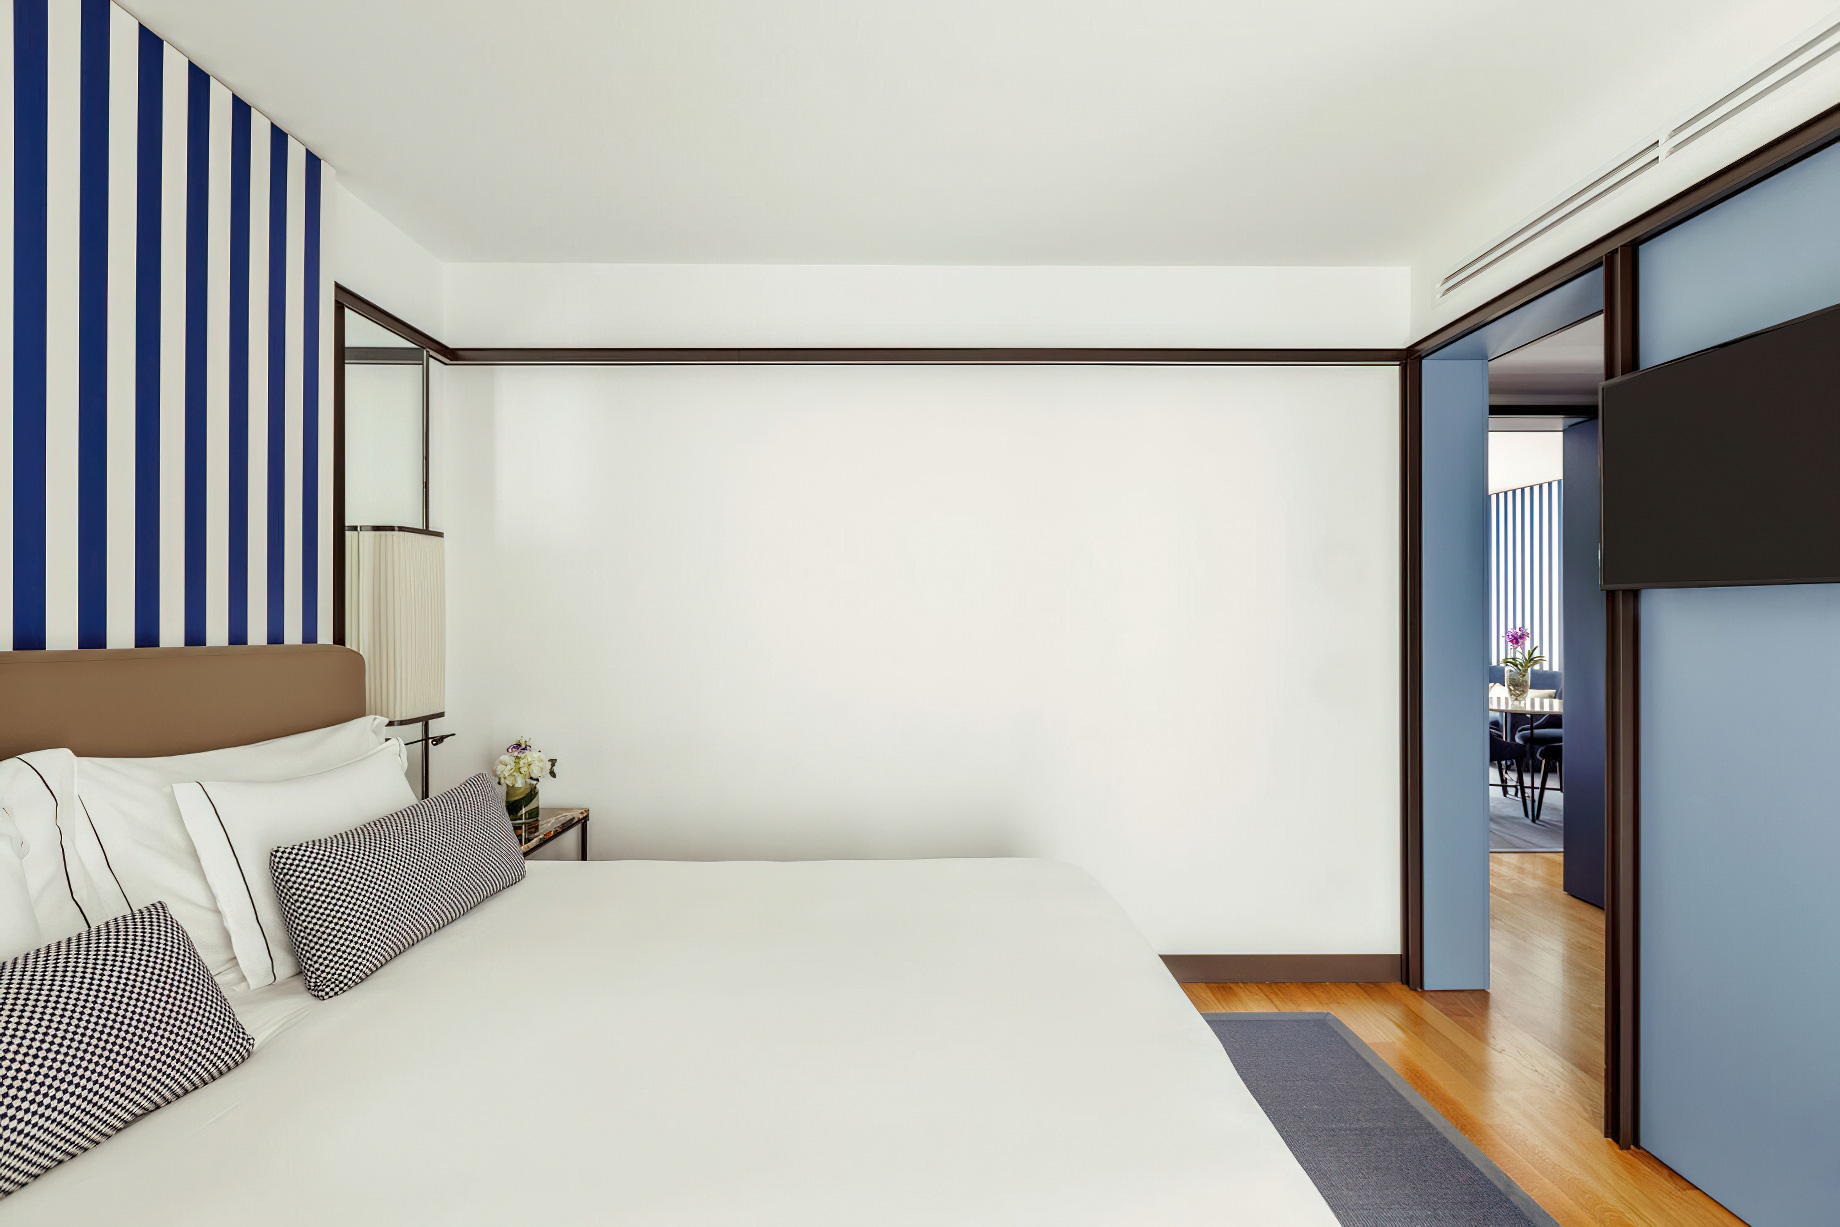 Tivoli Portopiccolo Sistiana Resort & Spa – Sistiana, Italy – Two Bedroom Suite